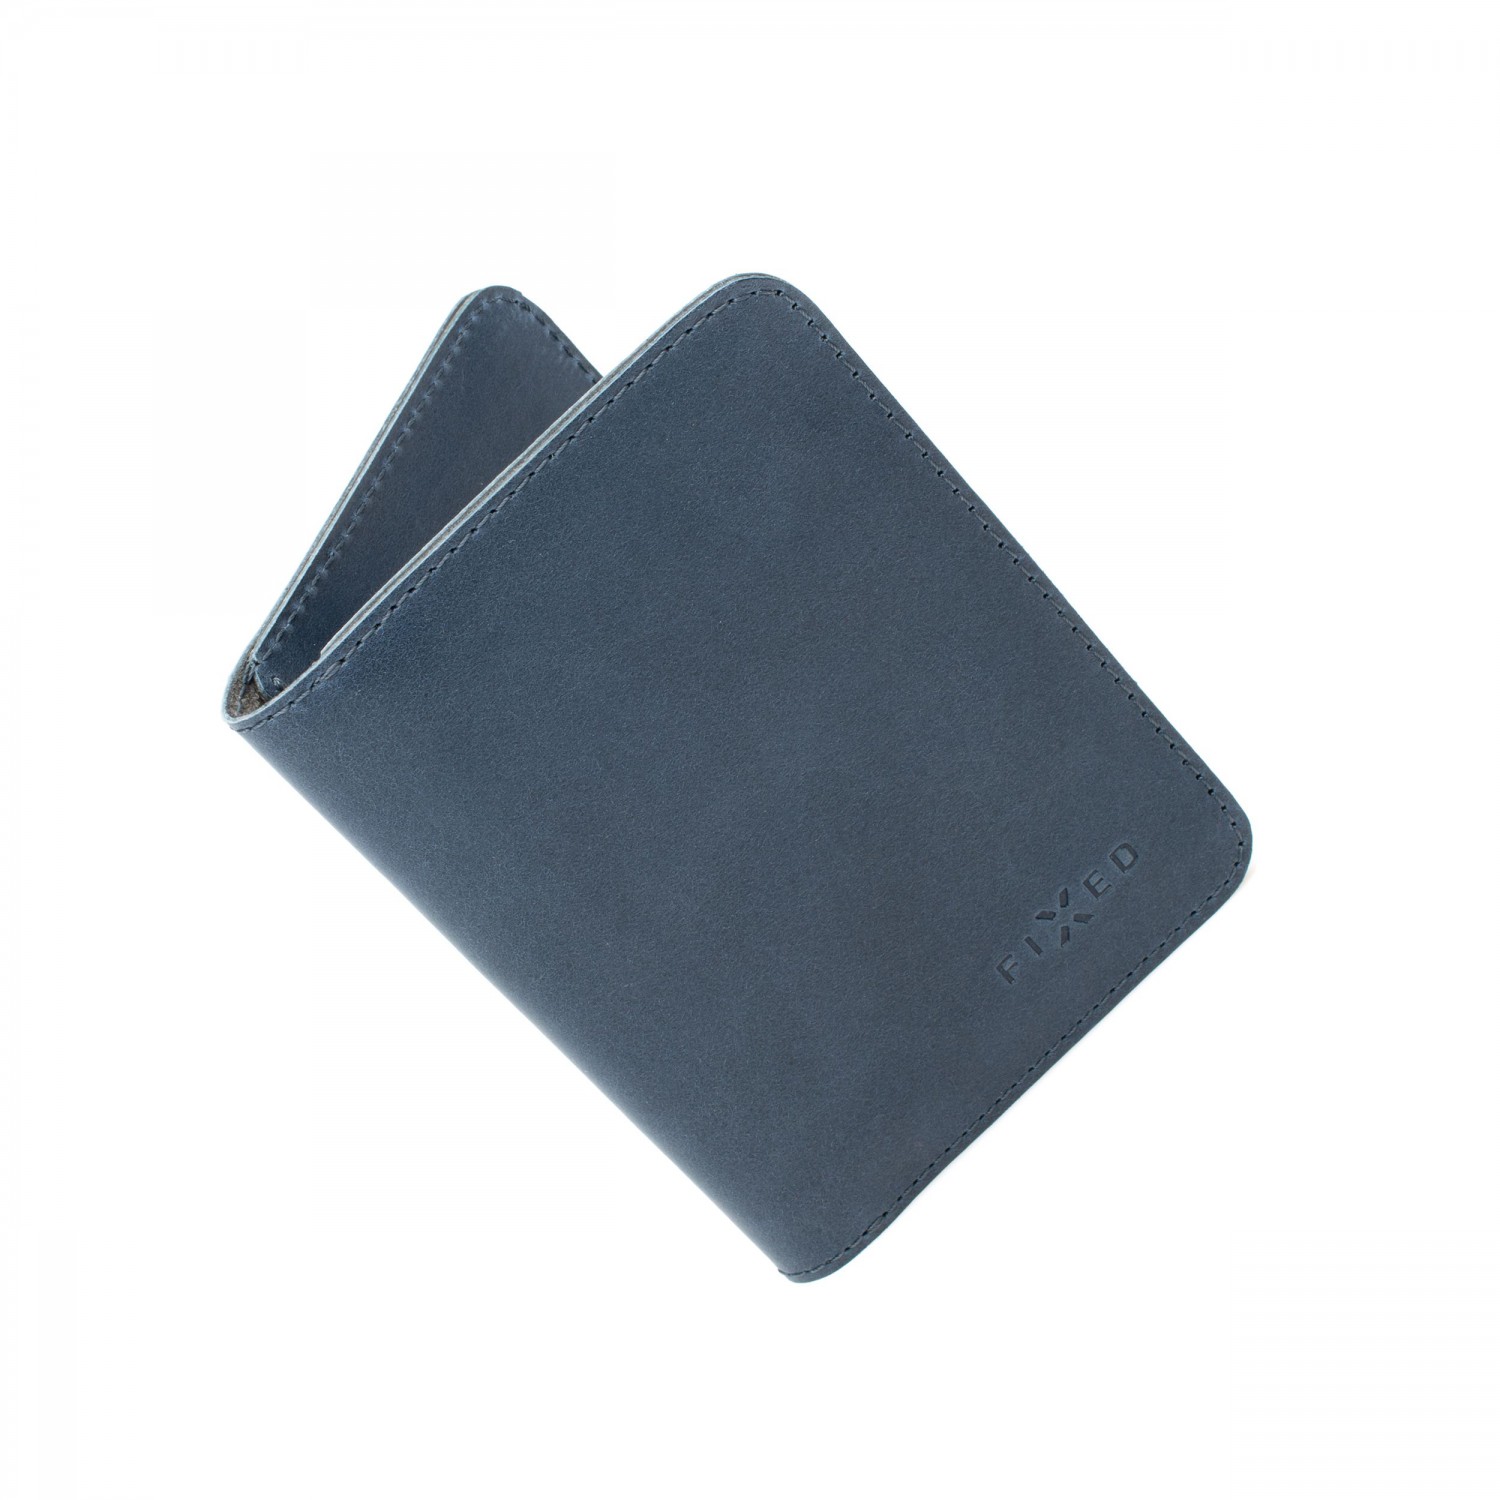 Kožená peněženka FIXED Smile Wallet XL se smart trackerem FIXED Smile PRO, modrá